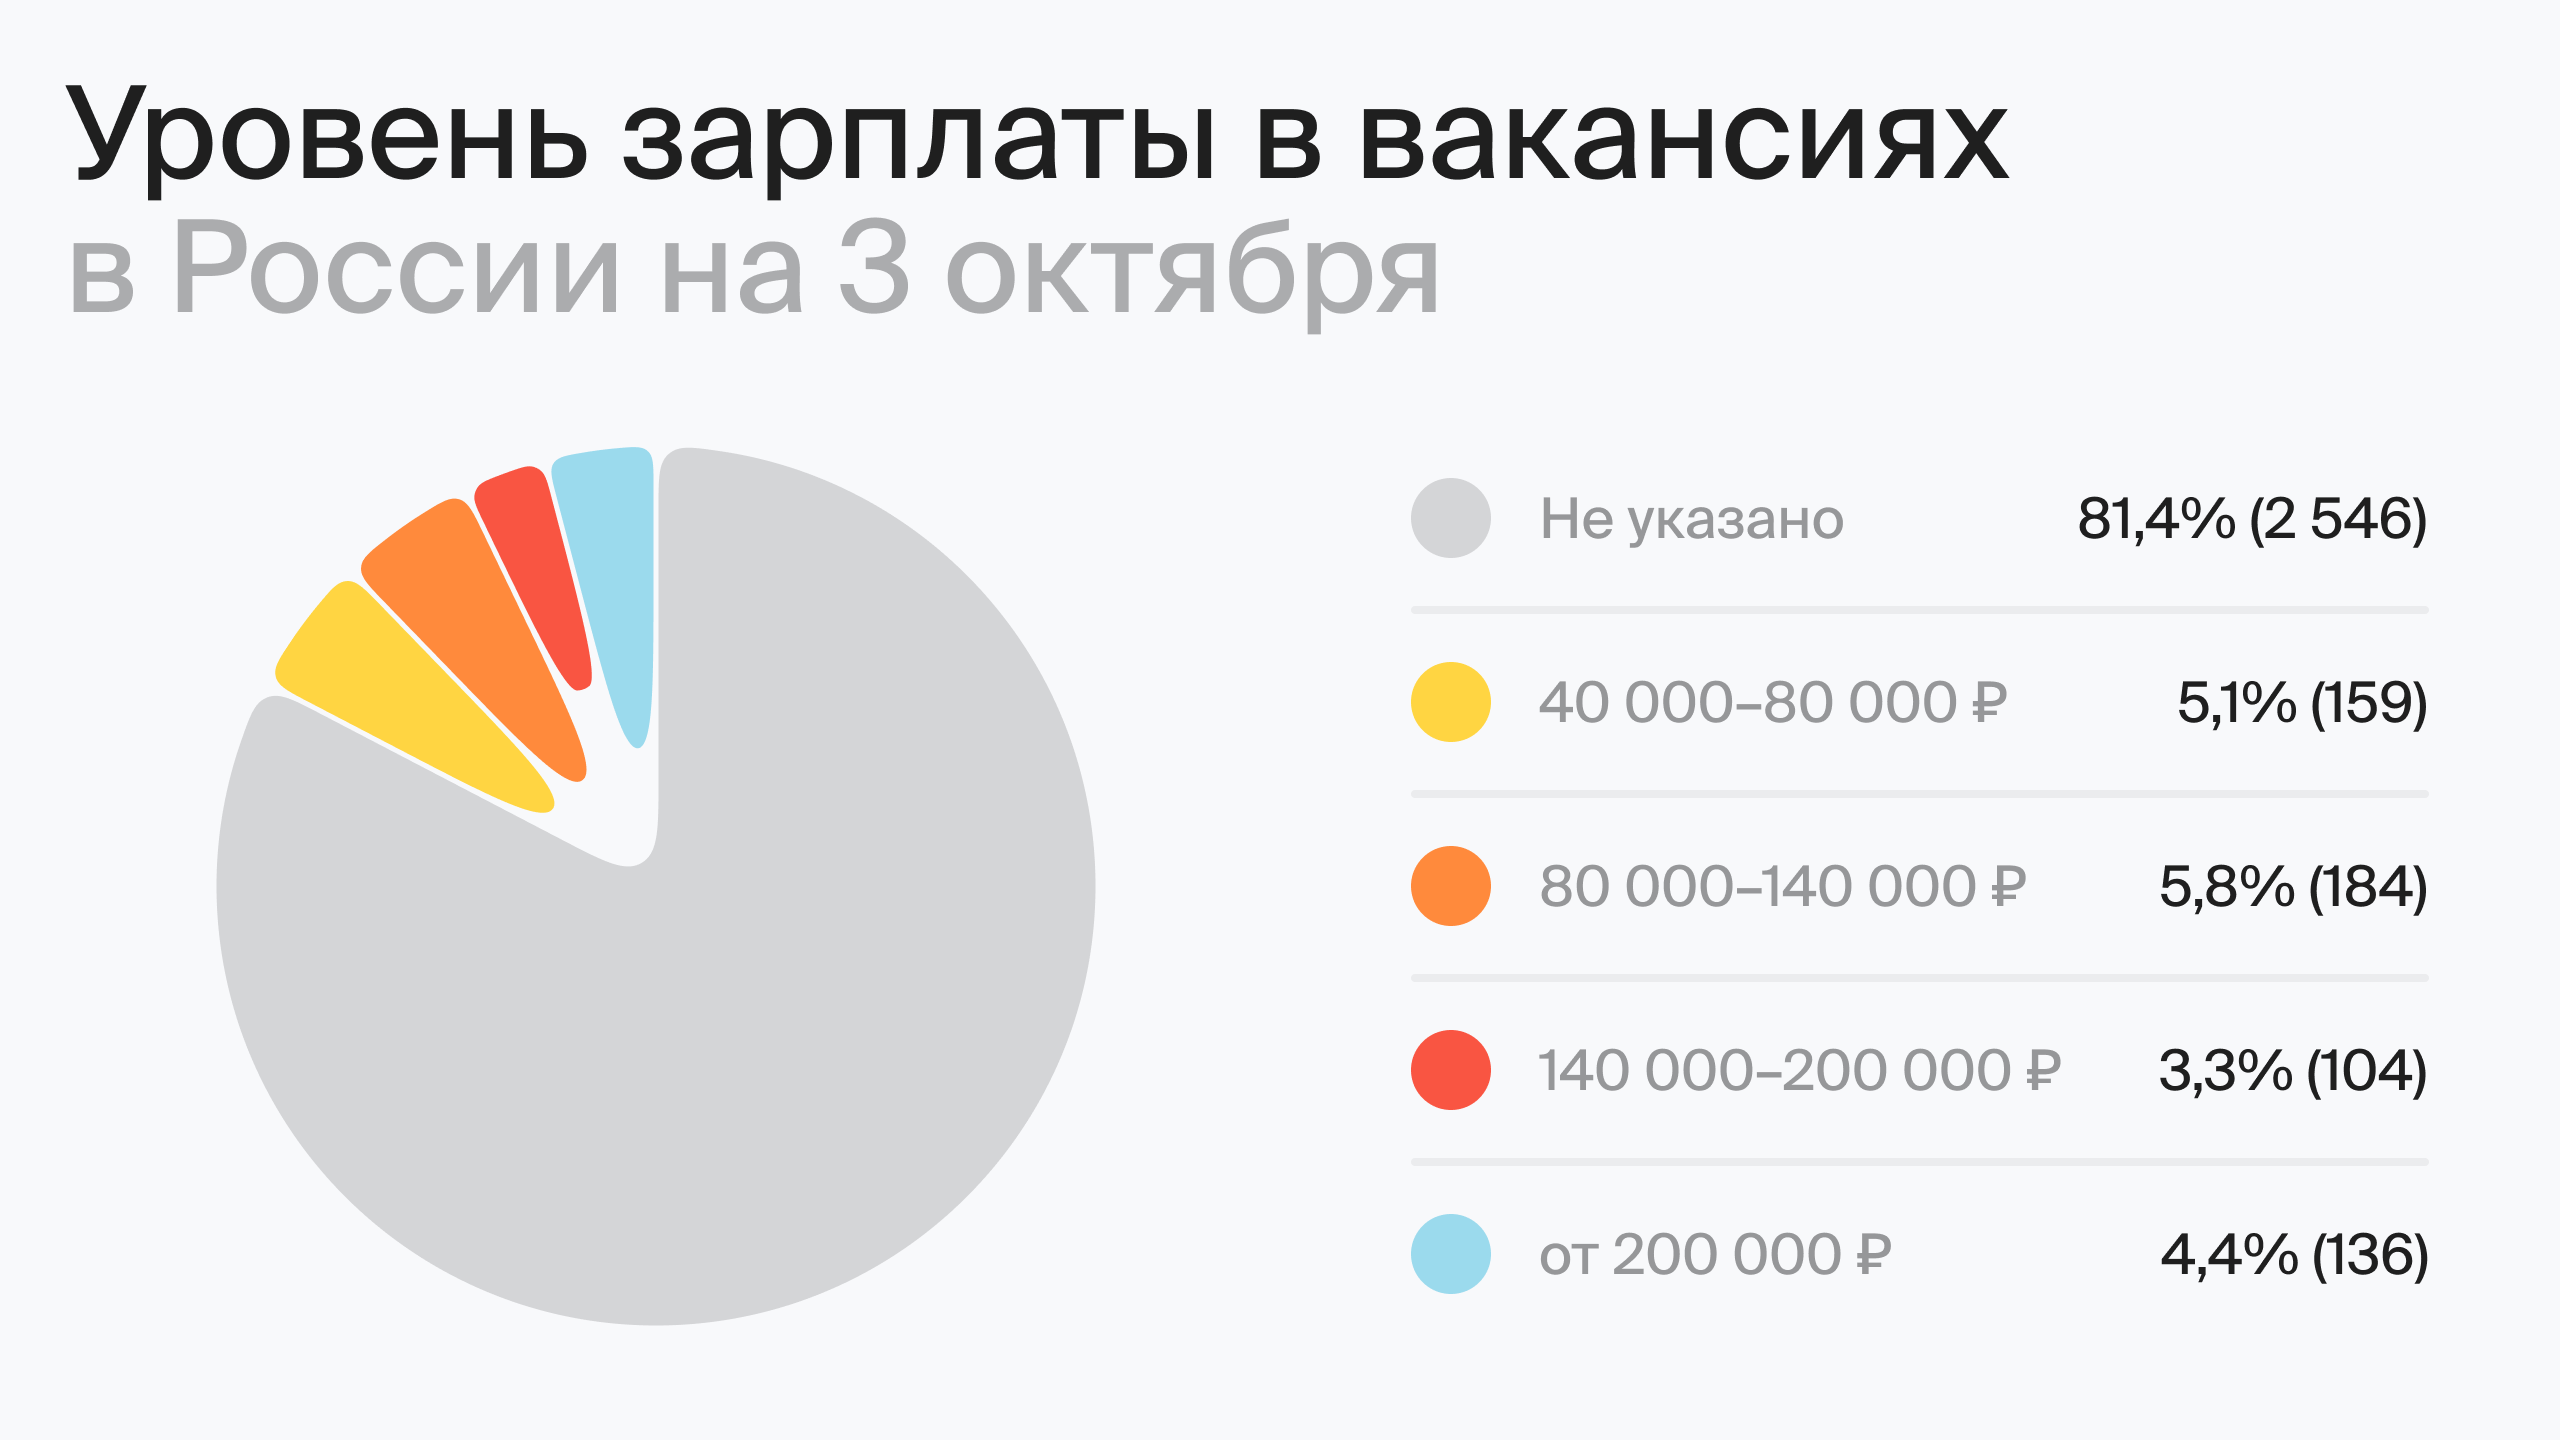 Уровень зарплаты в вакансиях в России на 3 октября (по данным hh.ru)